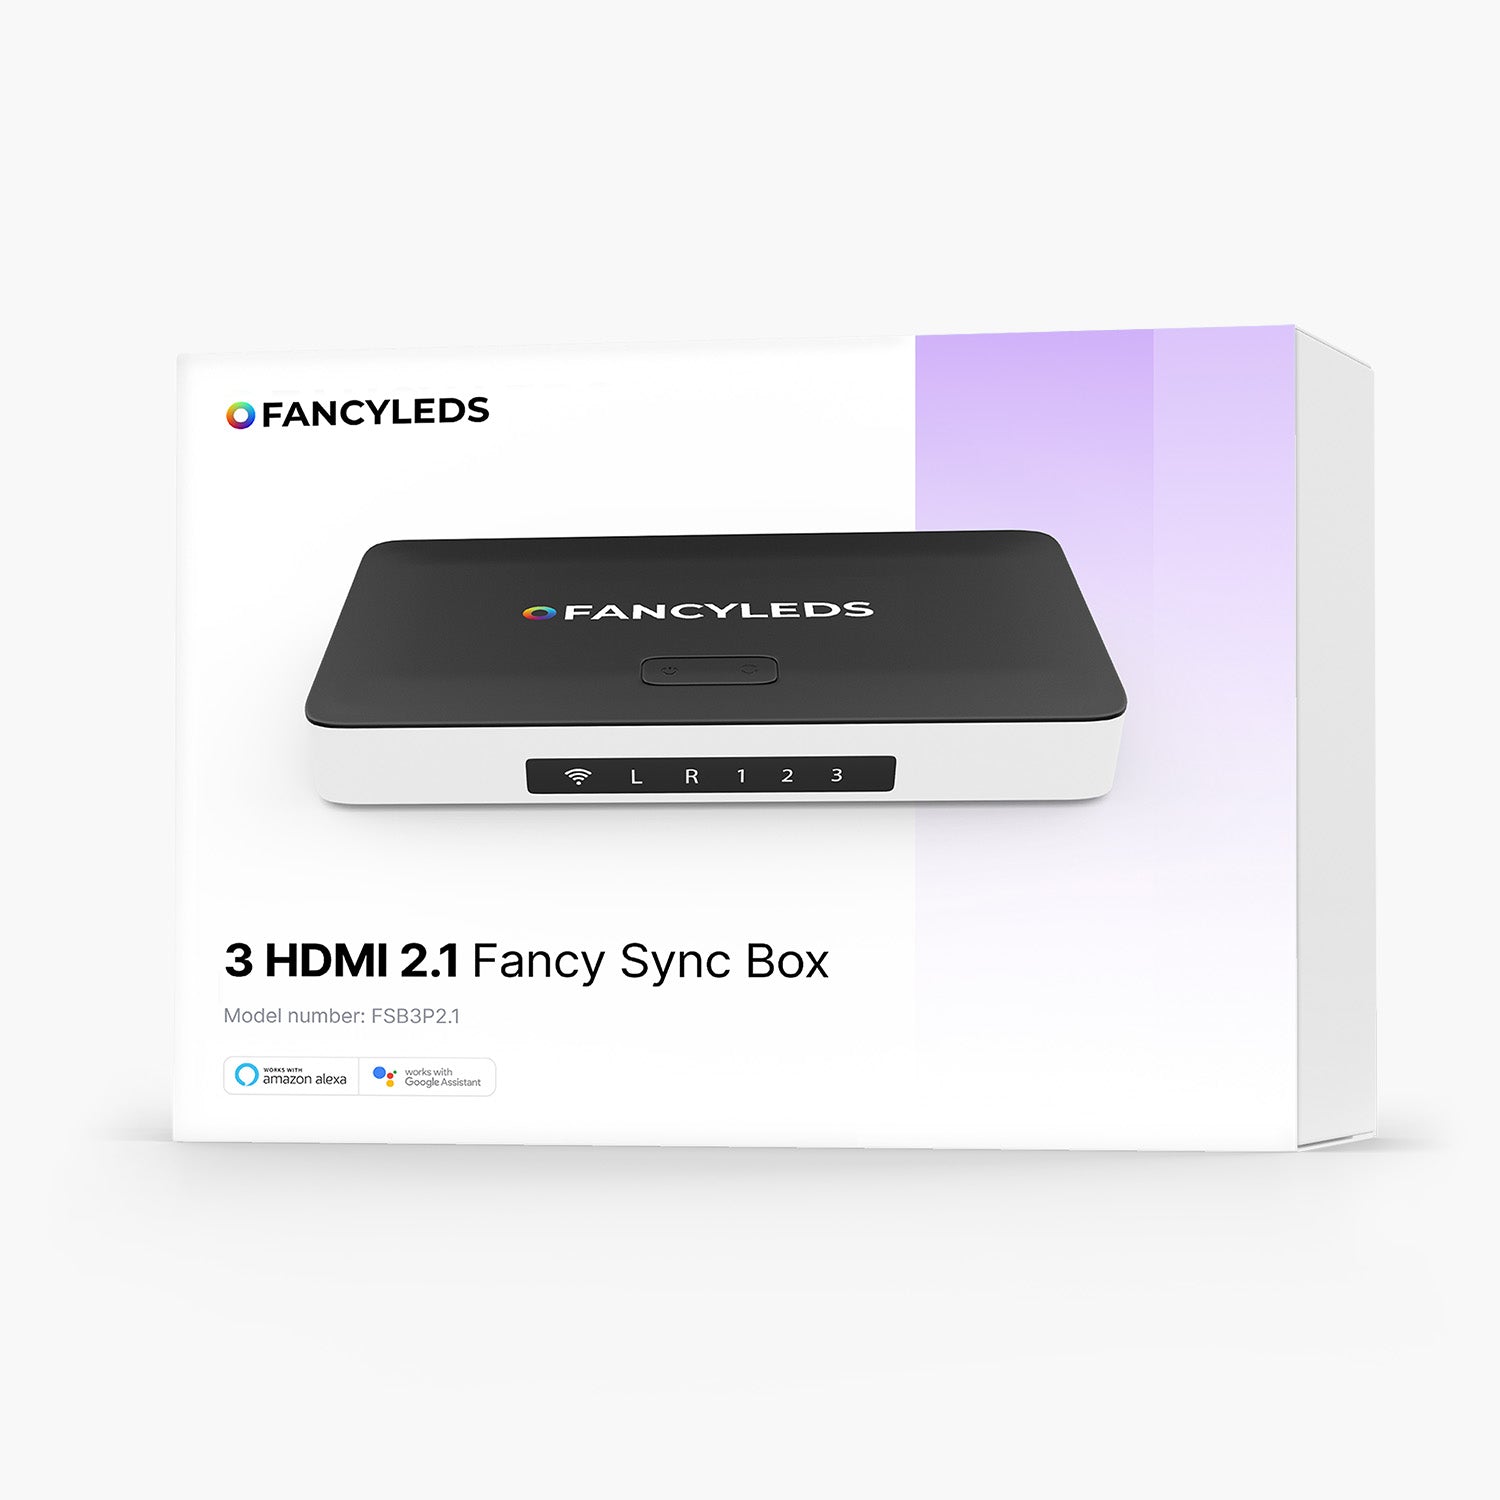 3 HDMI 2.1 Fancy Sync Box